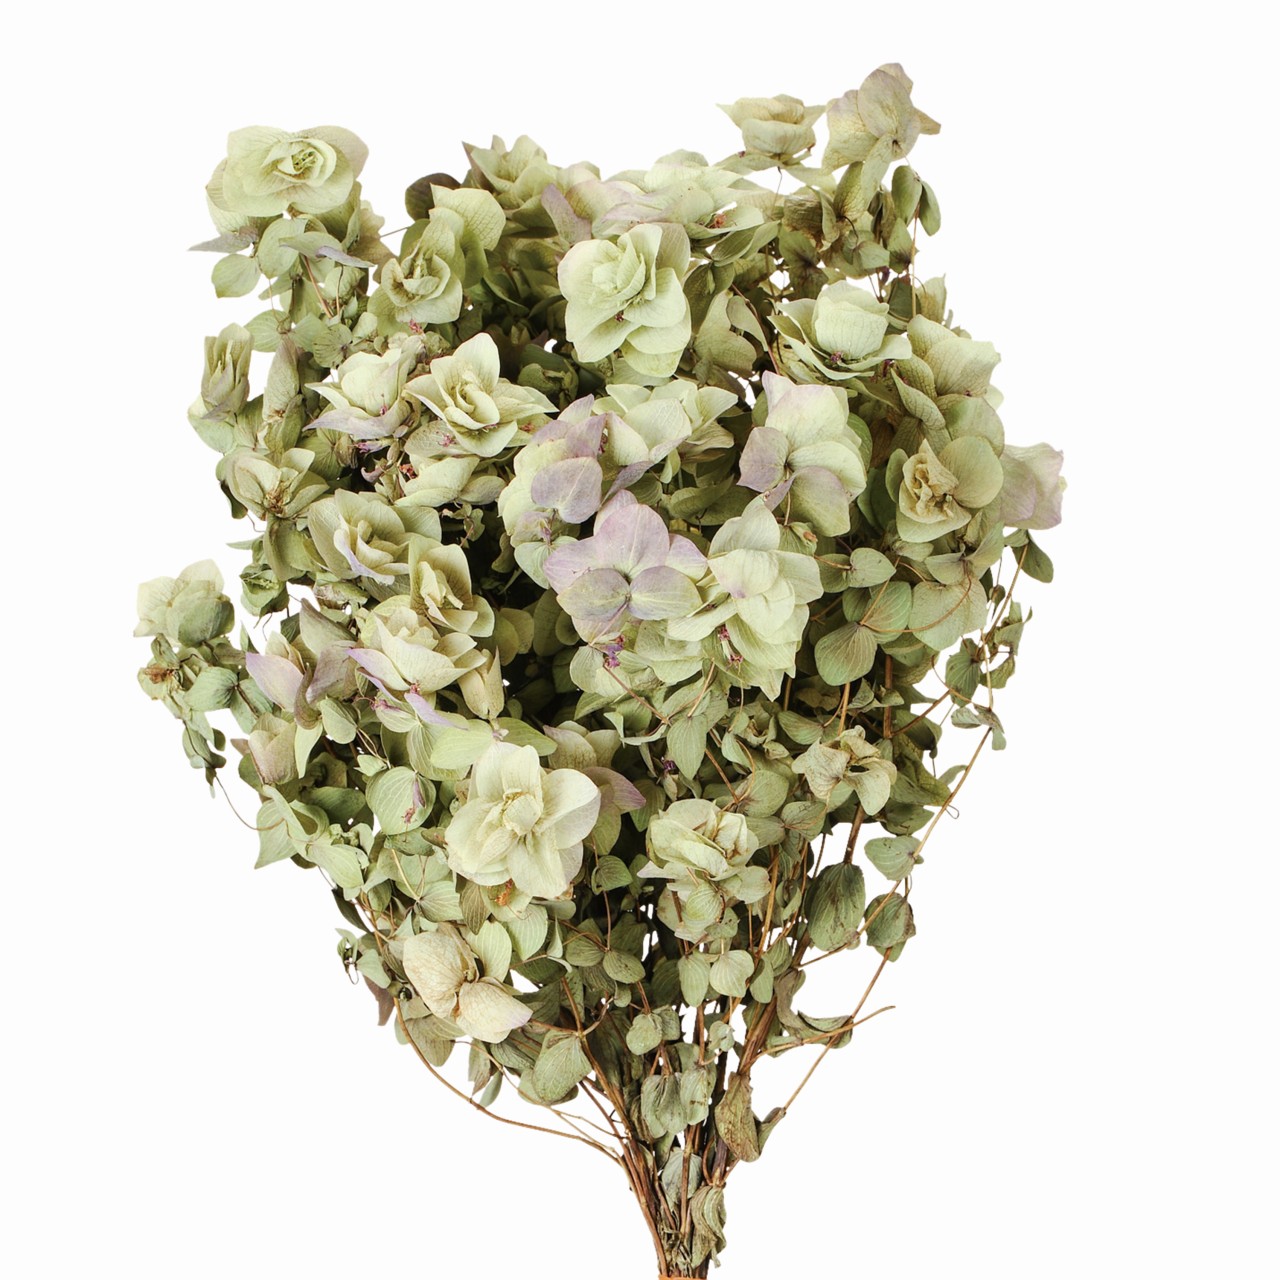 マイフラ 通販 風の花 花オレガノ ドライフラワー ナチュラル Dn 長さ 約25cm ドライフラワー ナチュラル素材 全国にmagiq 花器 花資材などをお届けします